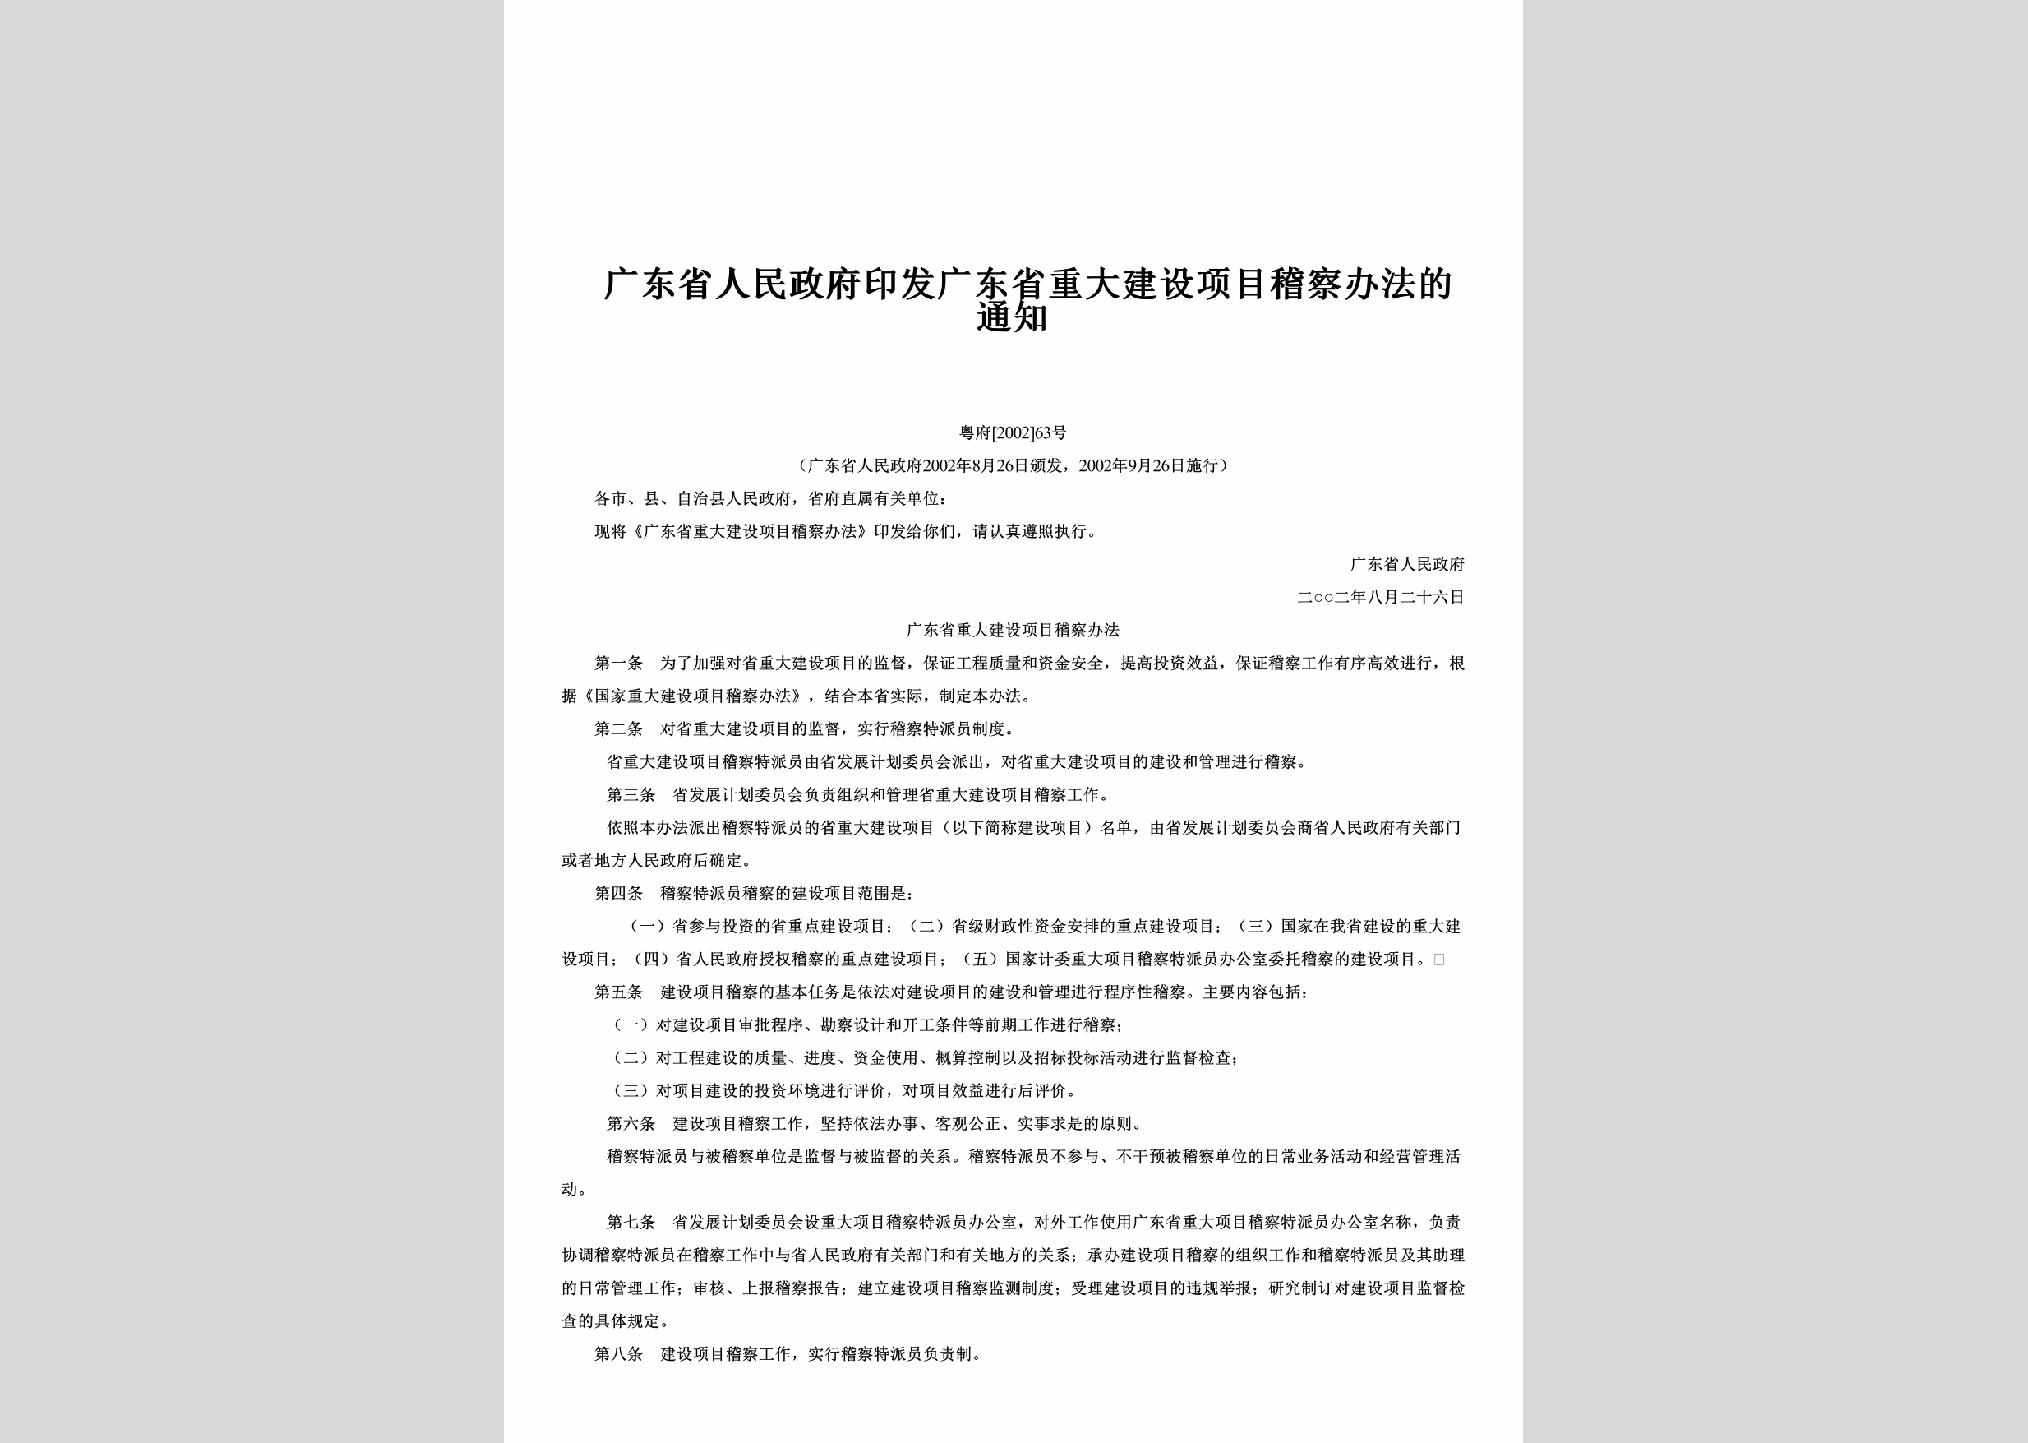 粤府[2002]63号：印发广东省重大建设项目稽察办法的通知